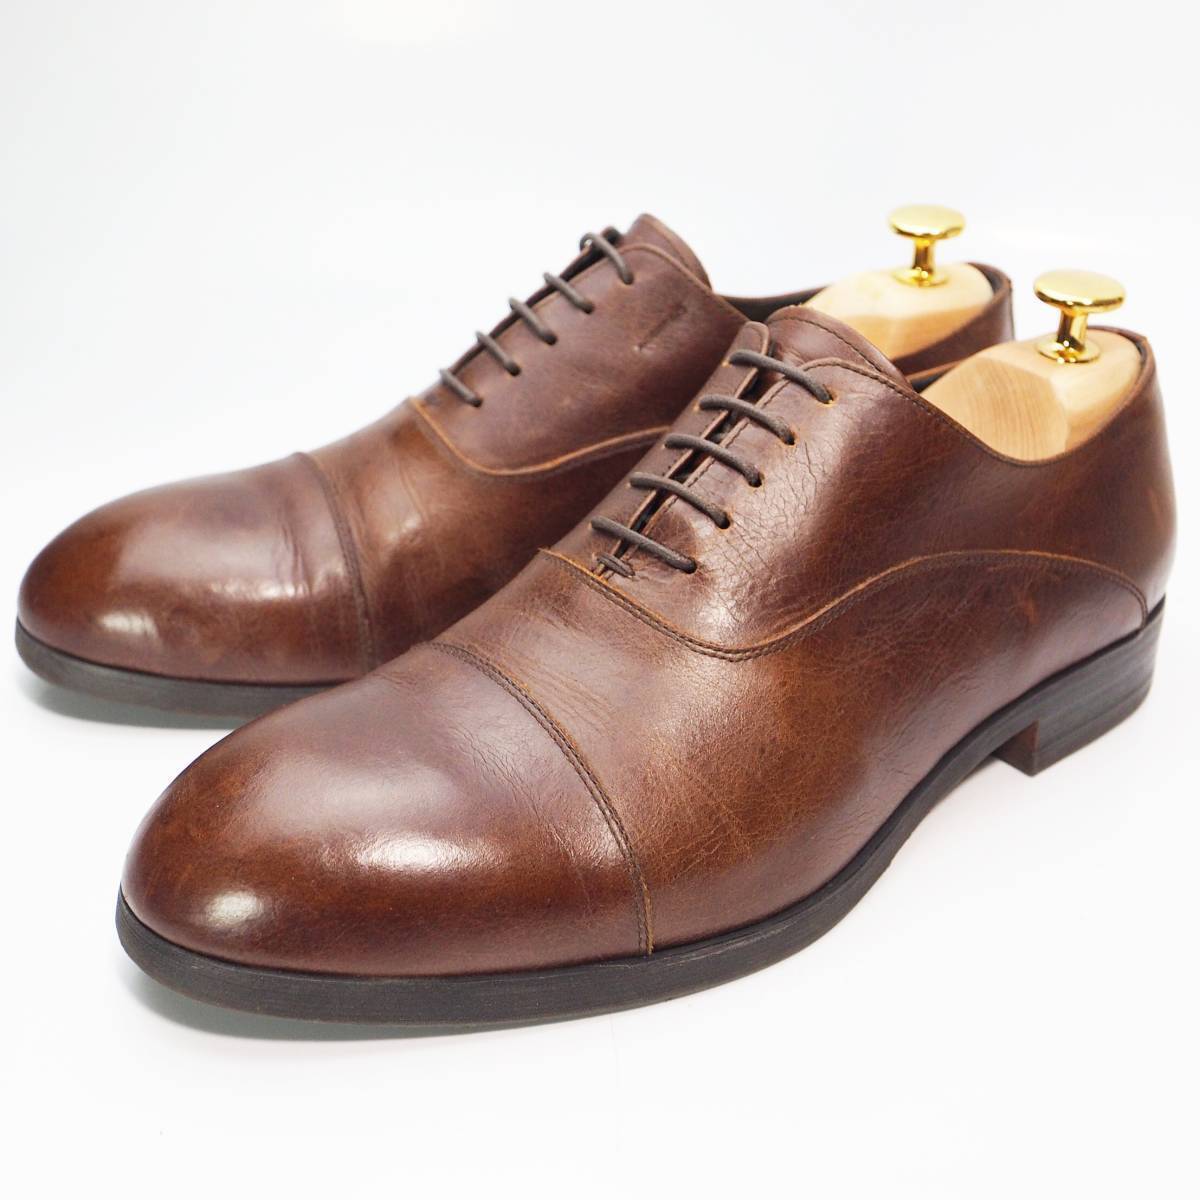 フープディドゥ whoop-de-doo プレーントゥ ドレスシューズ 革靴 ビジネスシューズ 本革 ブラウン 茶 メンズ25.5cm 紳士靴 日本製